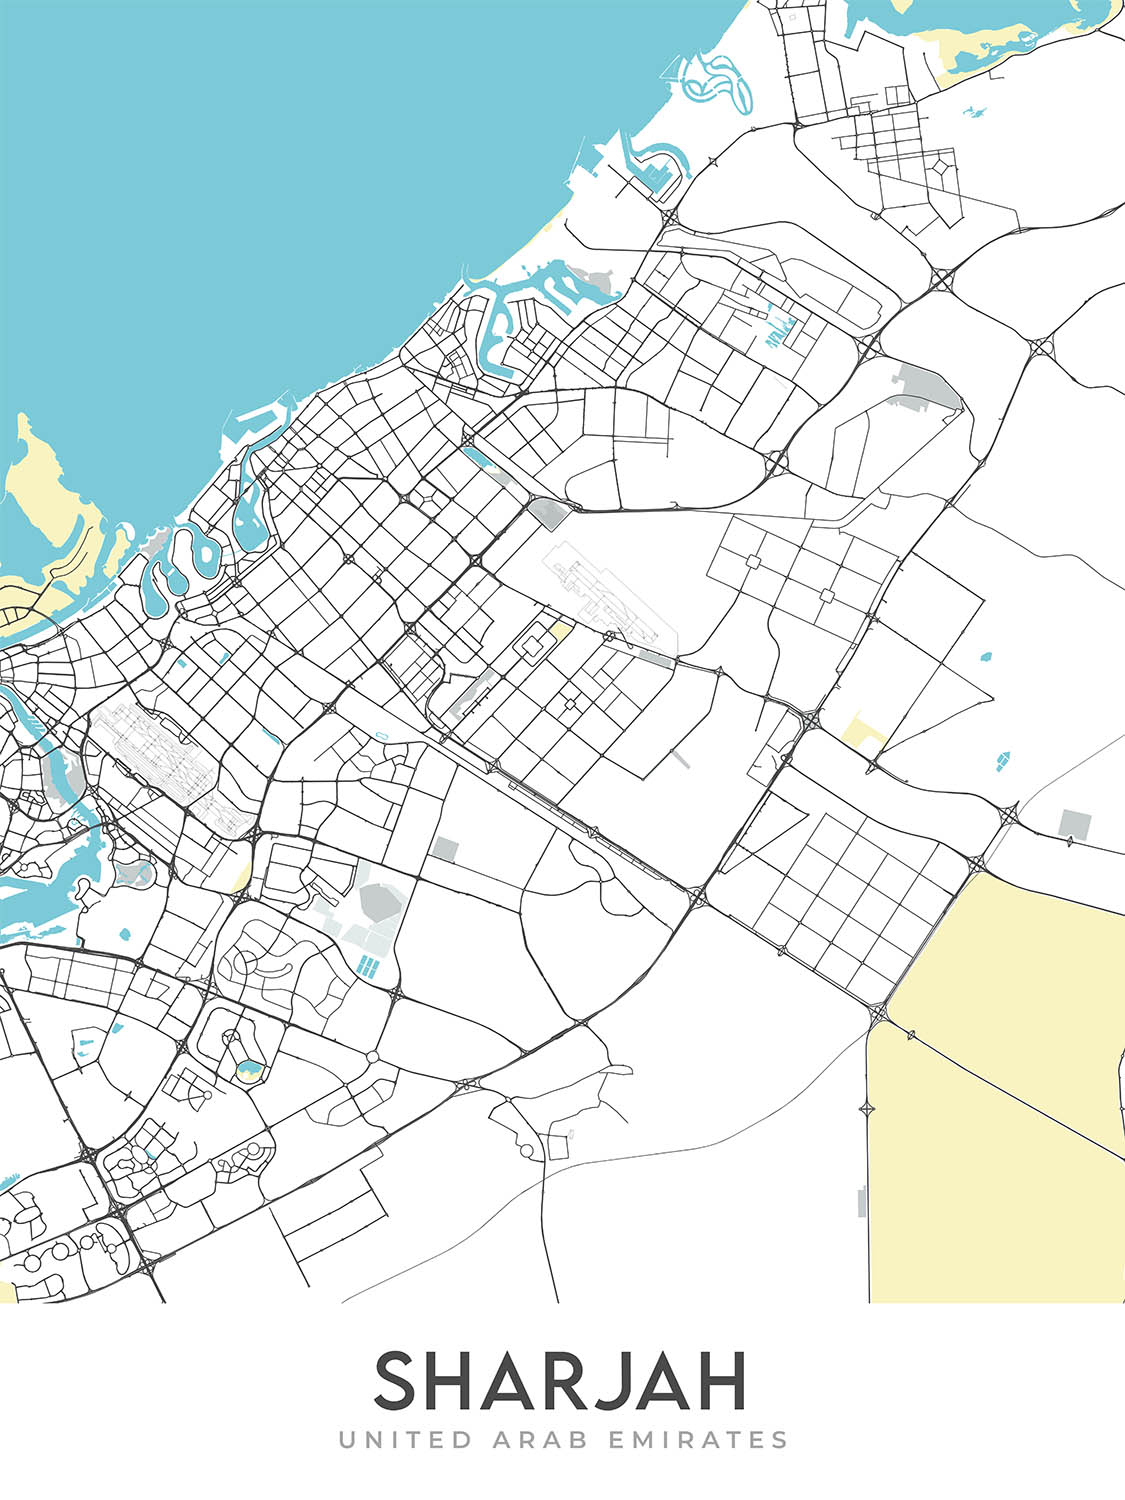 Mapa moderno de la ciudad de Sharjah, Emiratos Árabes Unidos: Mezquita Al Noor, Al Qasba, Paseo marítimo de Al Majaz, Universidad de Sharjah, Universidad Americana de Sharjah